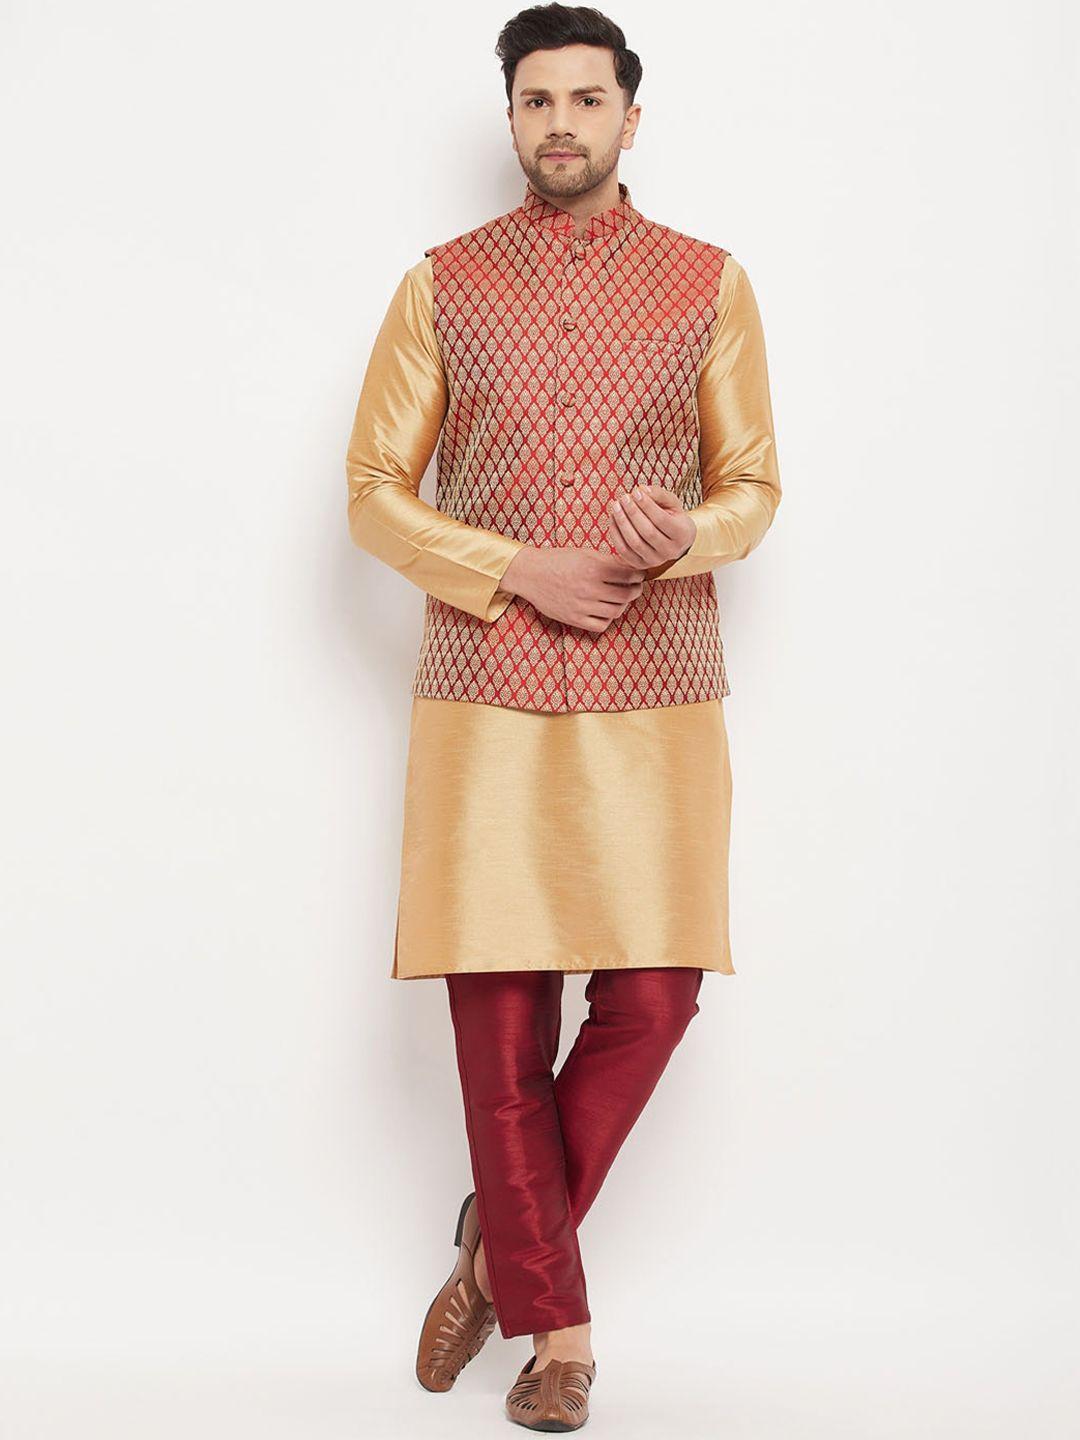 vm mandarin collar kurta with pyjamas with woven design nehru jacket